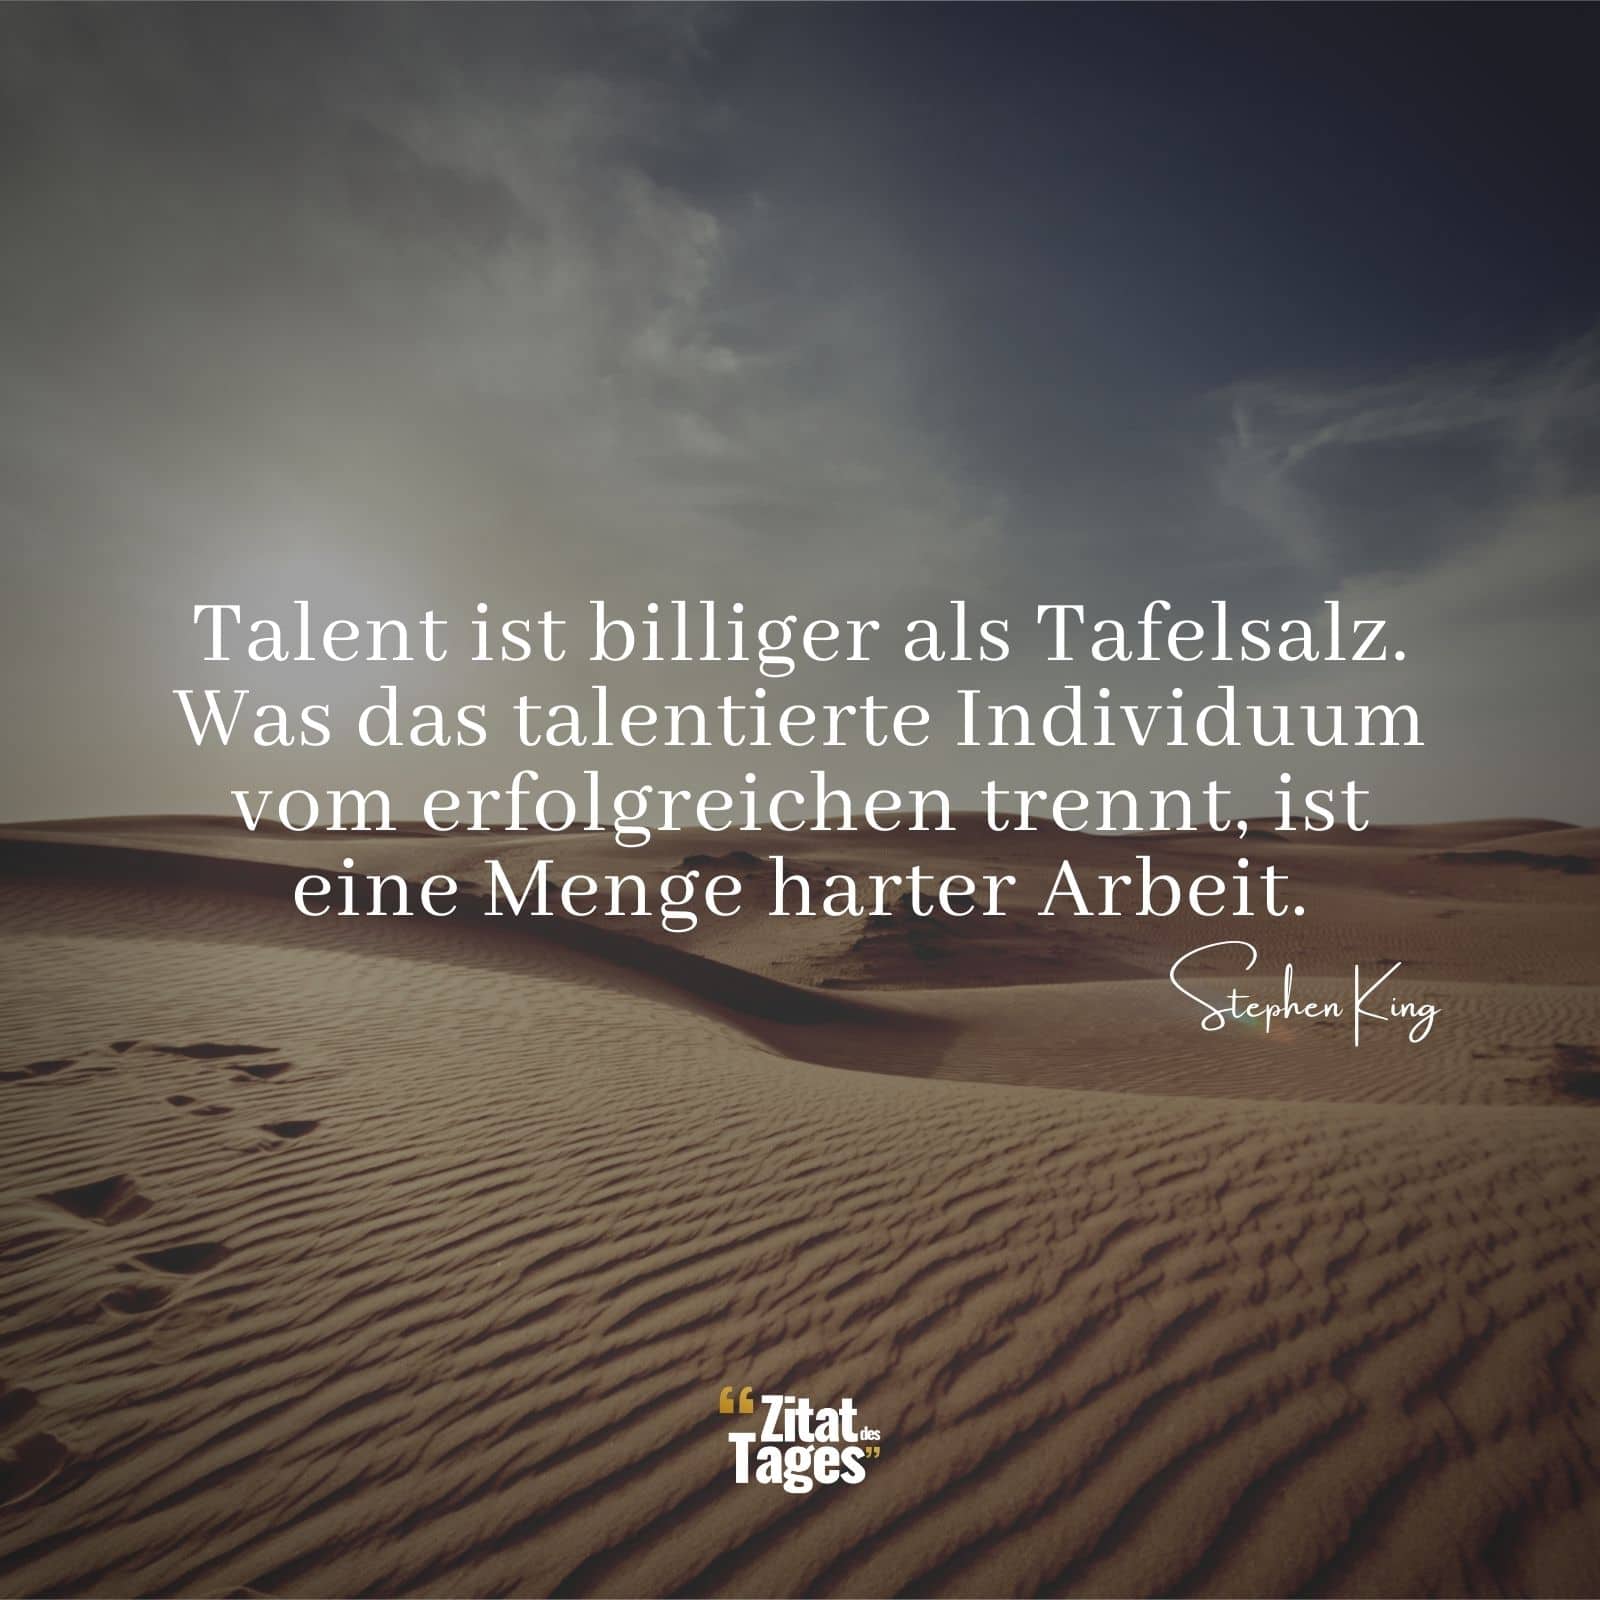 Talent ist billiger als Tafelsalz. Was das talentierte Individuum vom erfolgreichen trennt, ist eine Menge harter Arbeit. - Stephen King